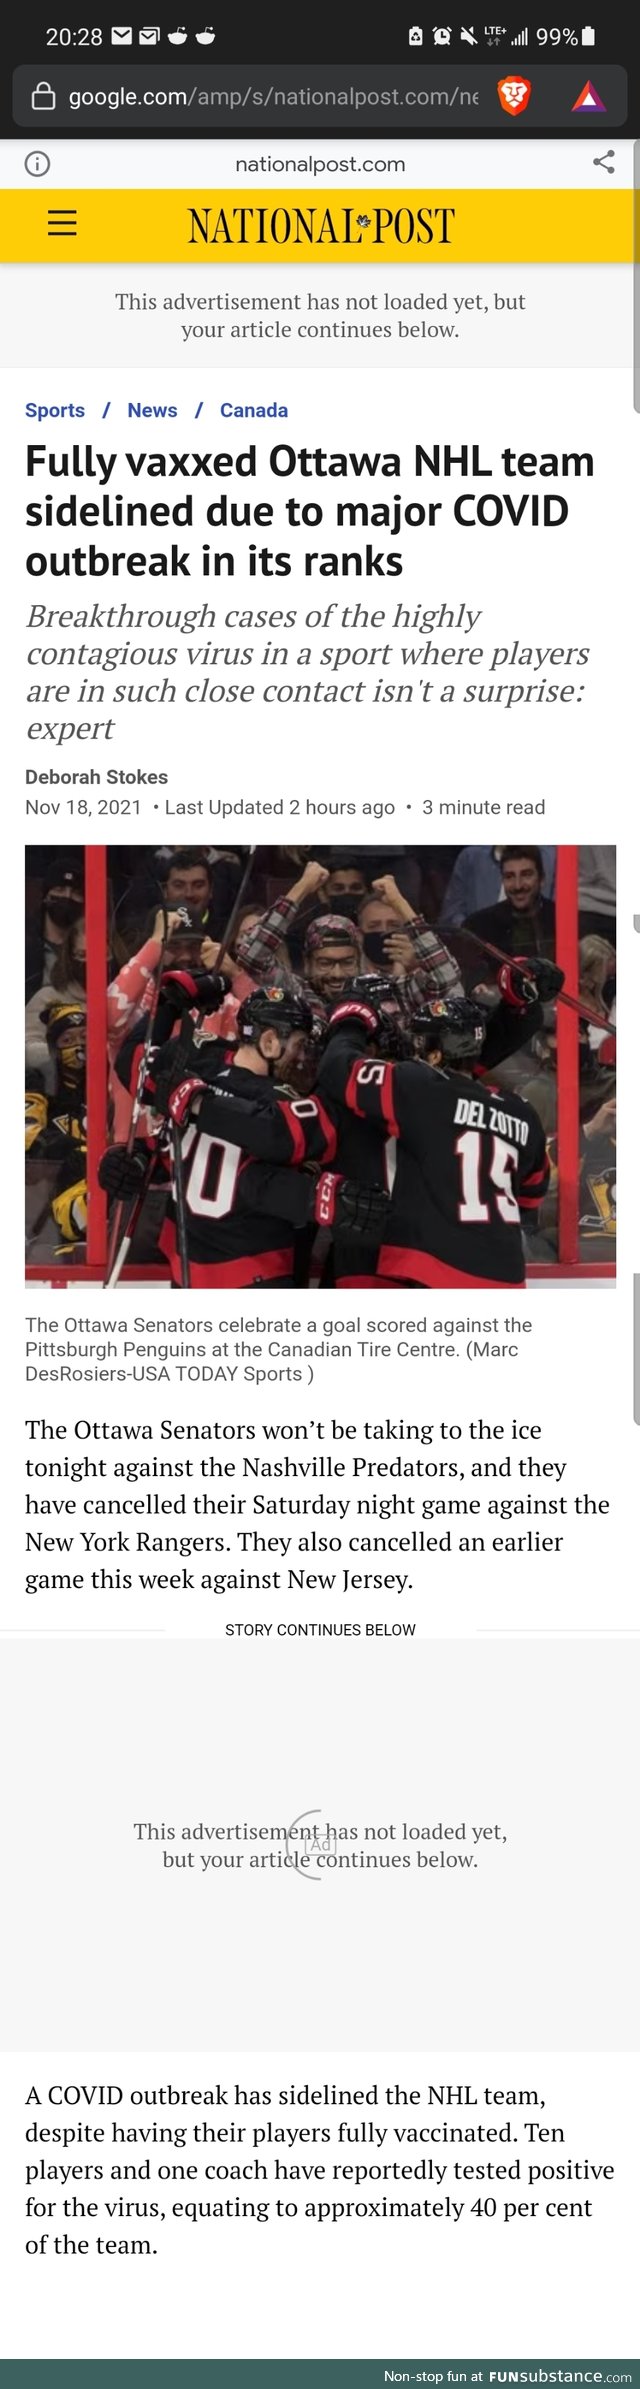 Ottawa Senators Making New Sport Out of Catching COVID